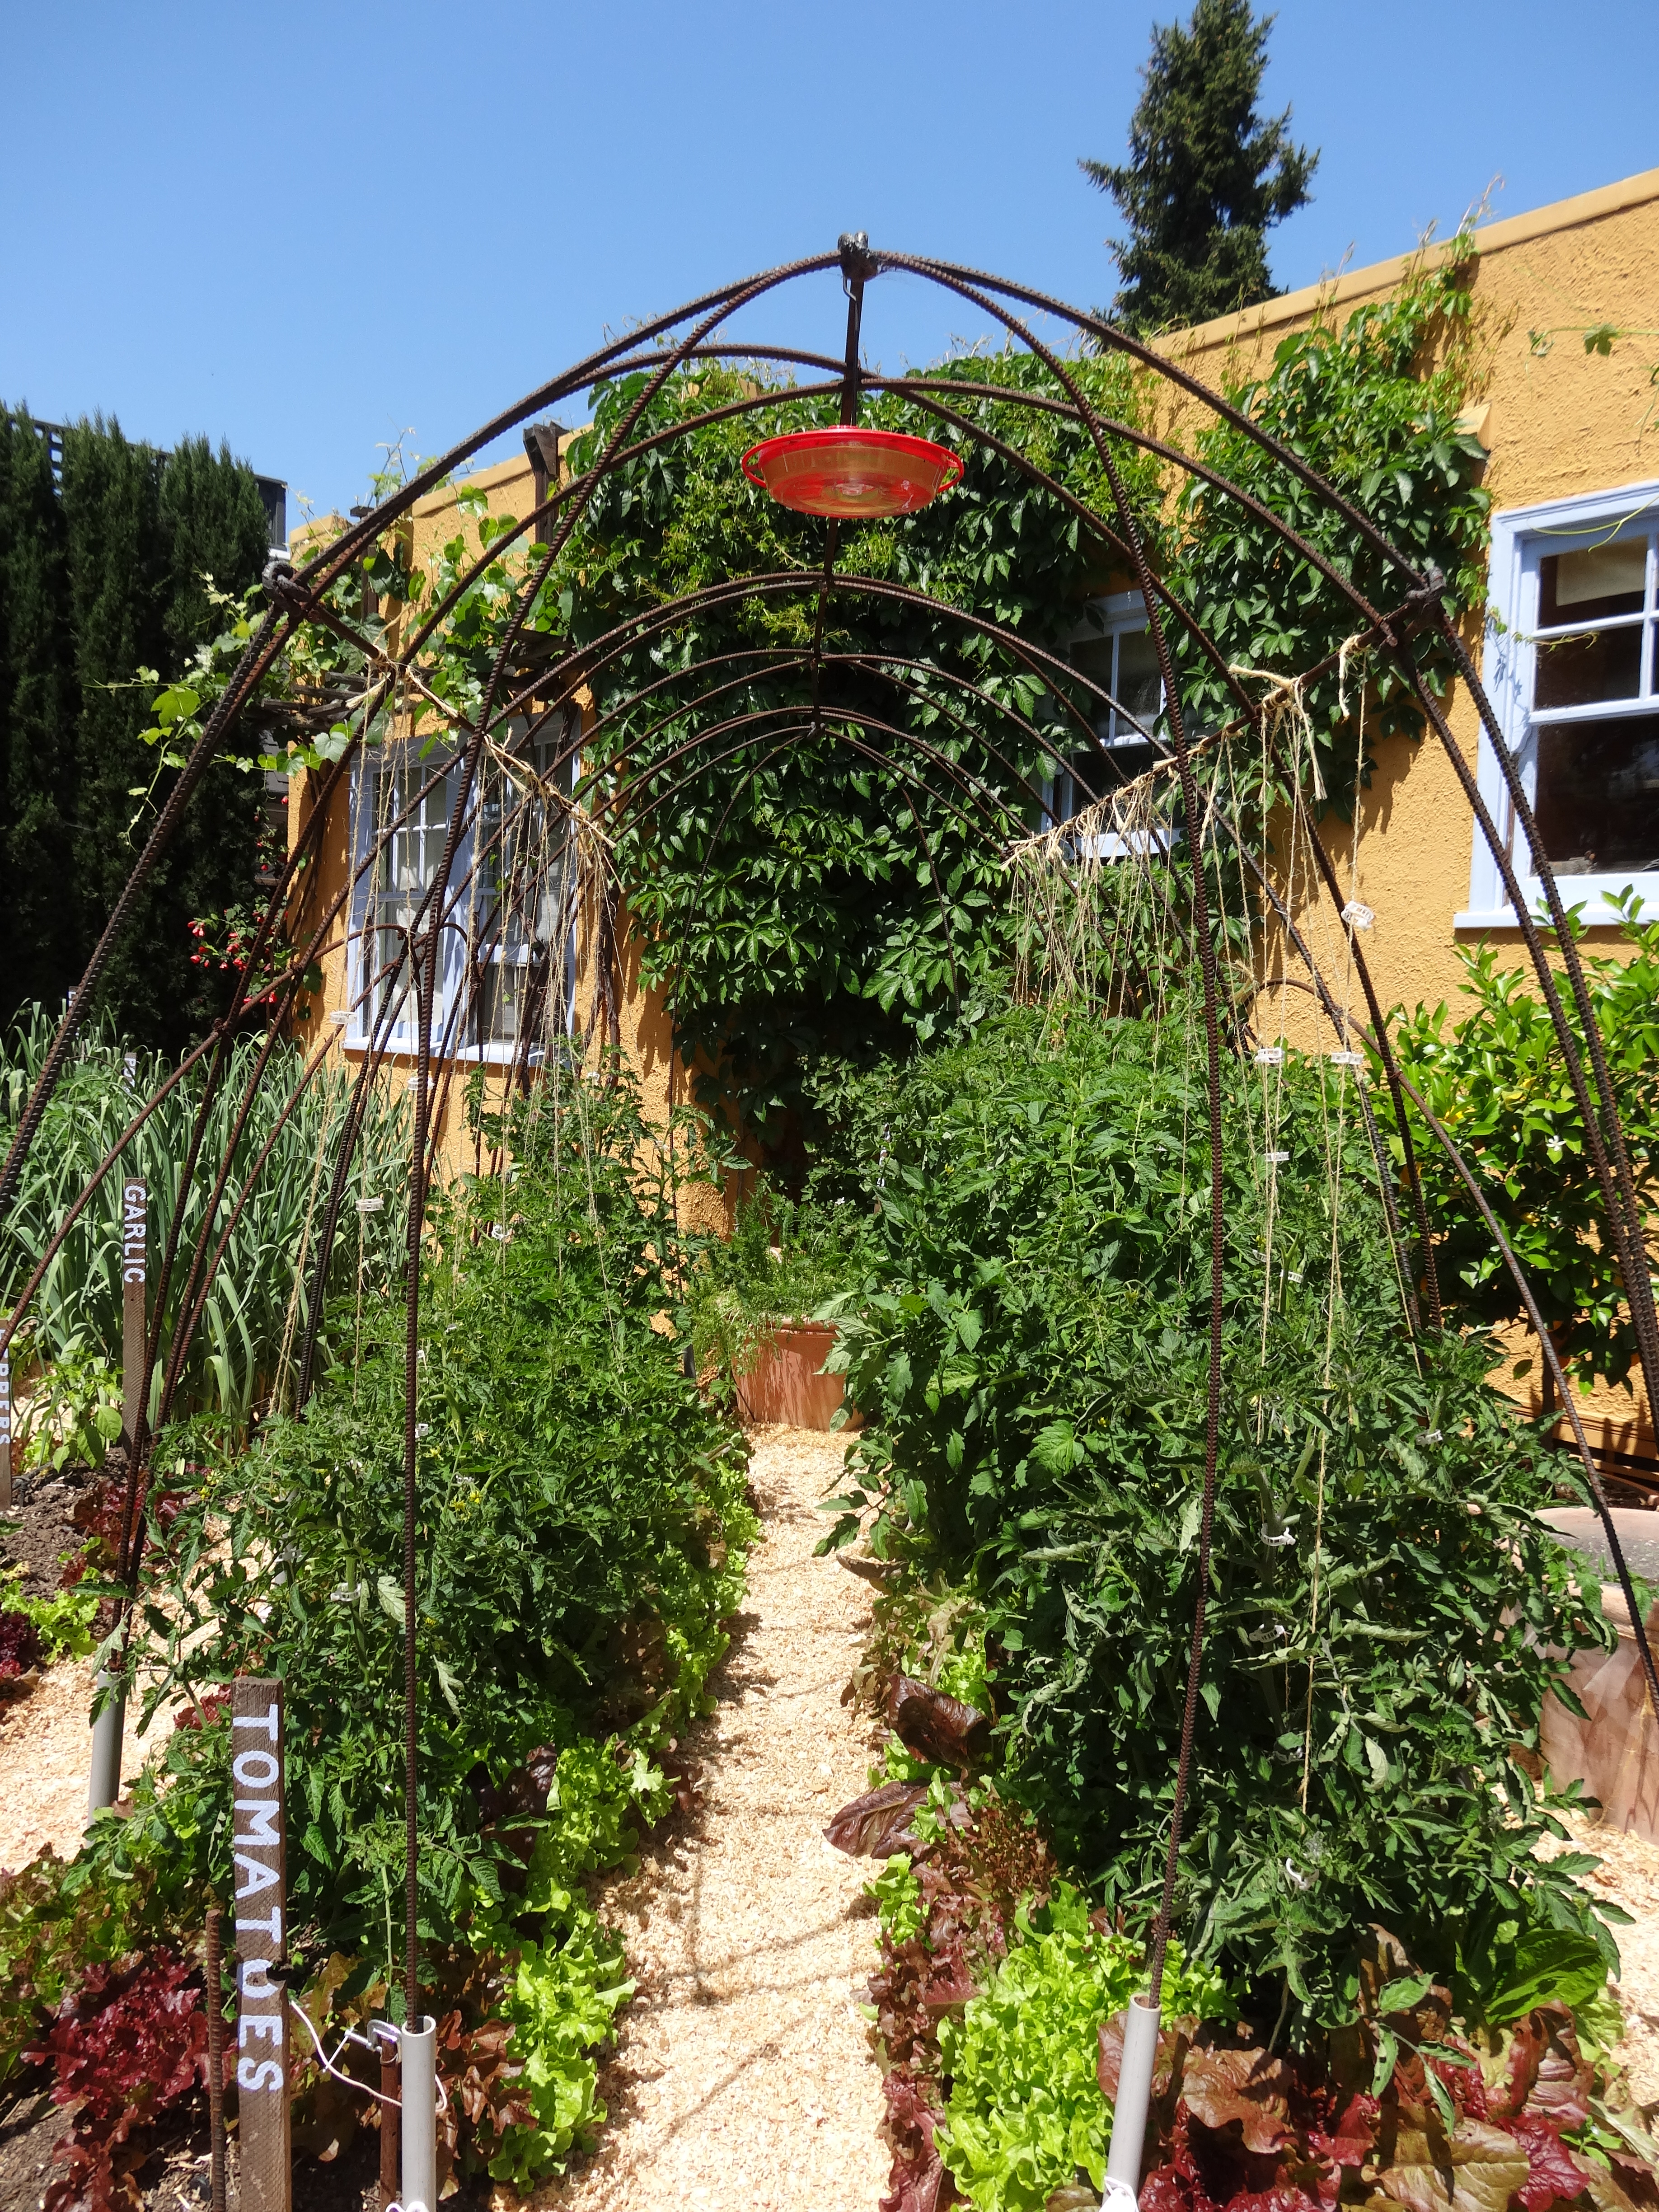 DIY edible garden tomato supports tended.wordpress.com